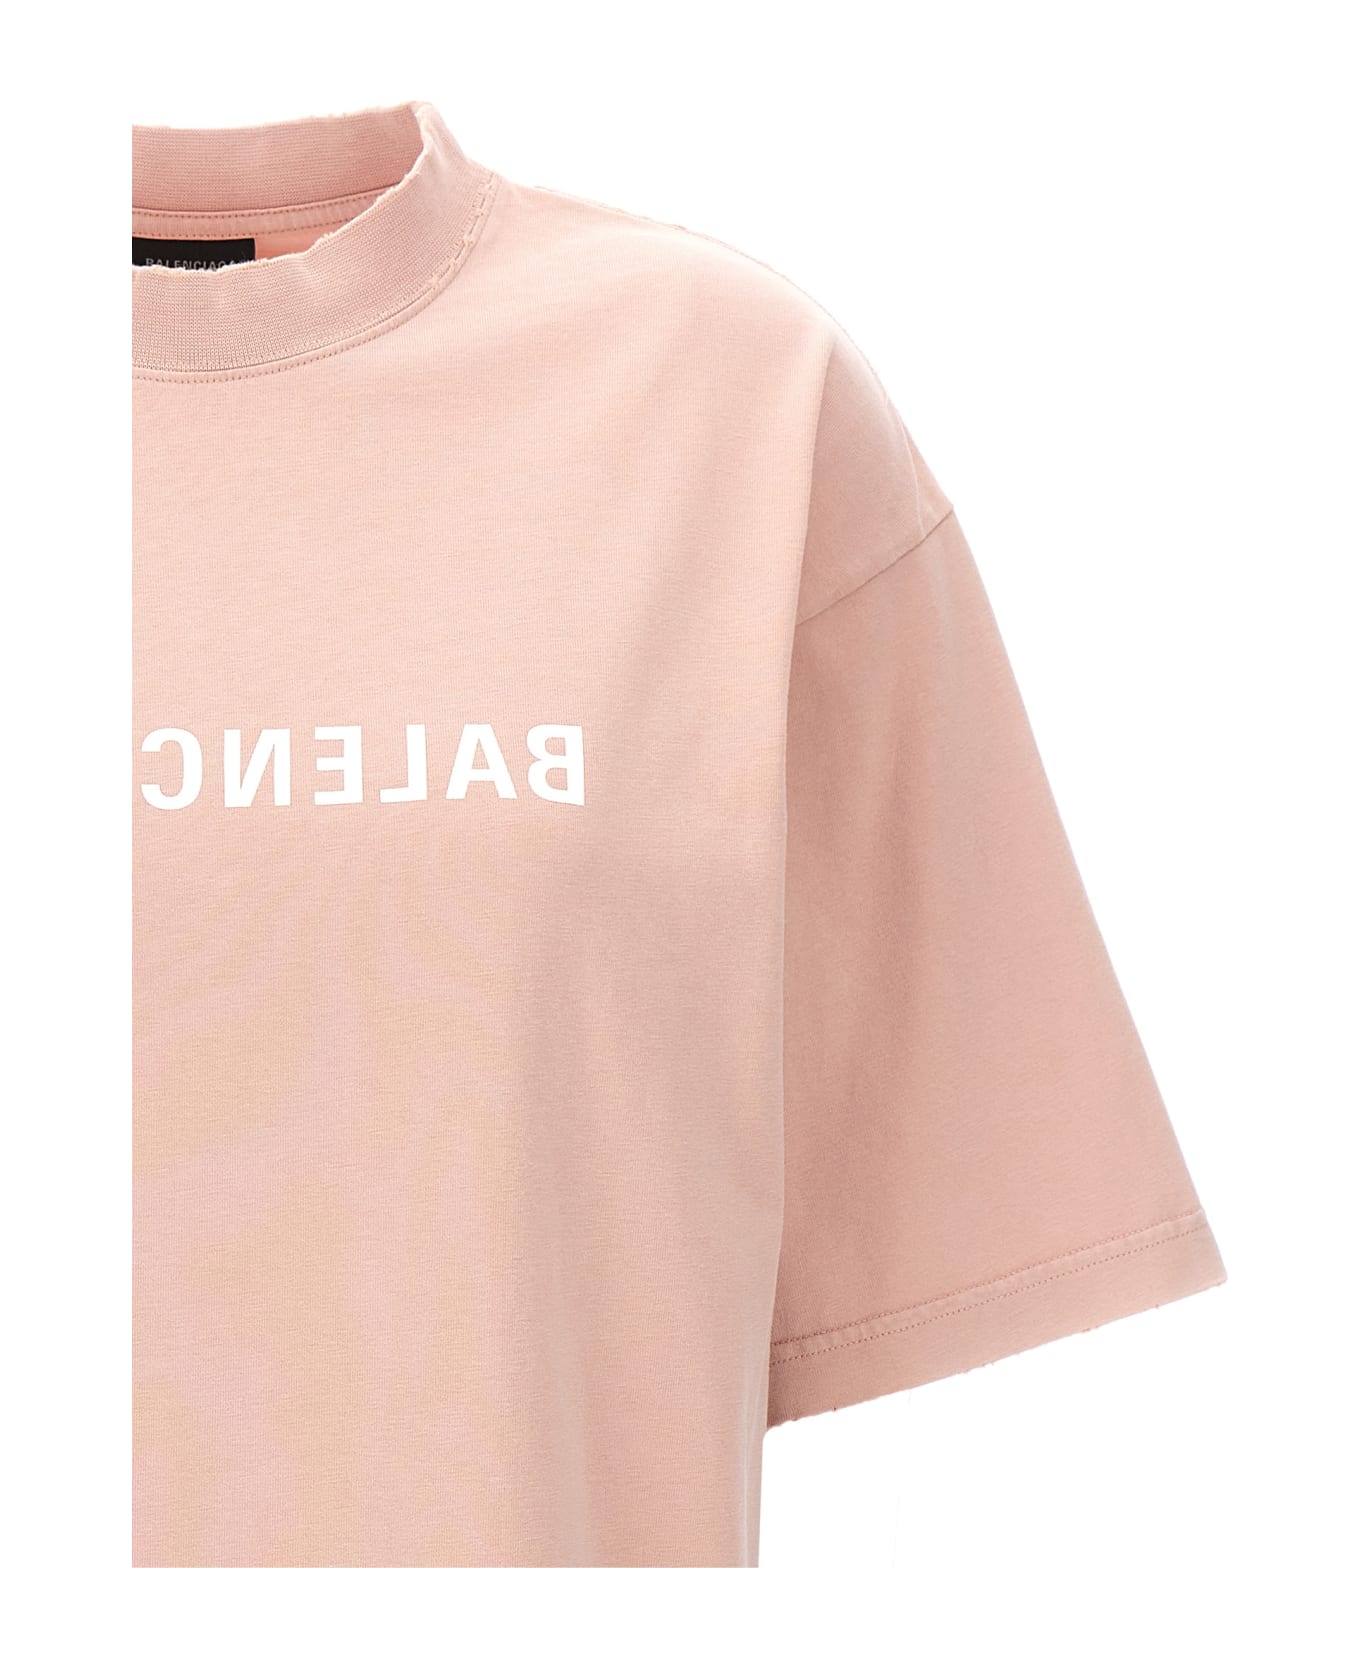 Balenciaga 'balenciaga Mirror' T-shirt - Pink